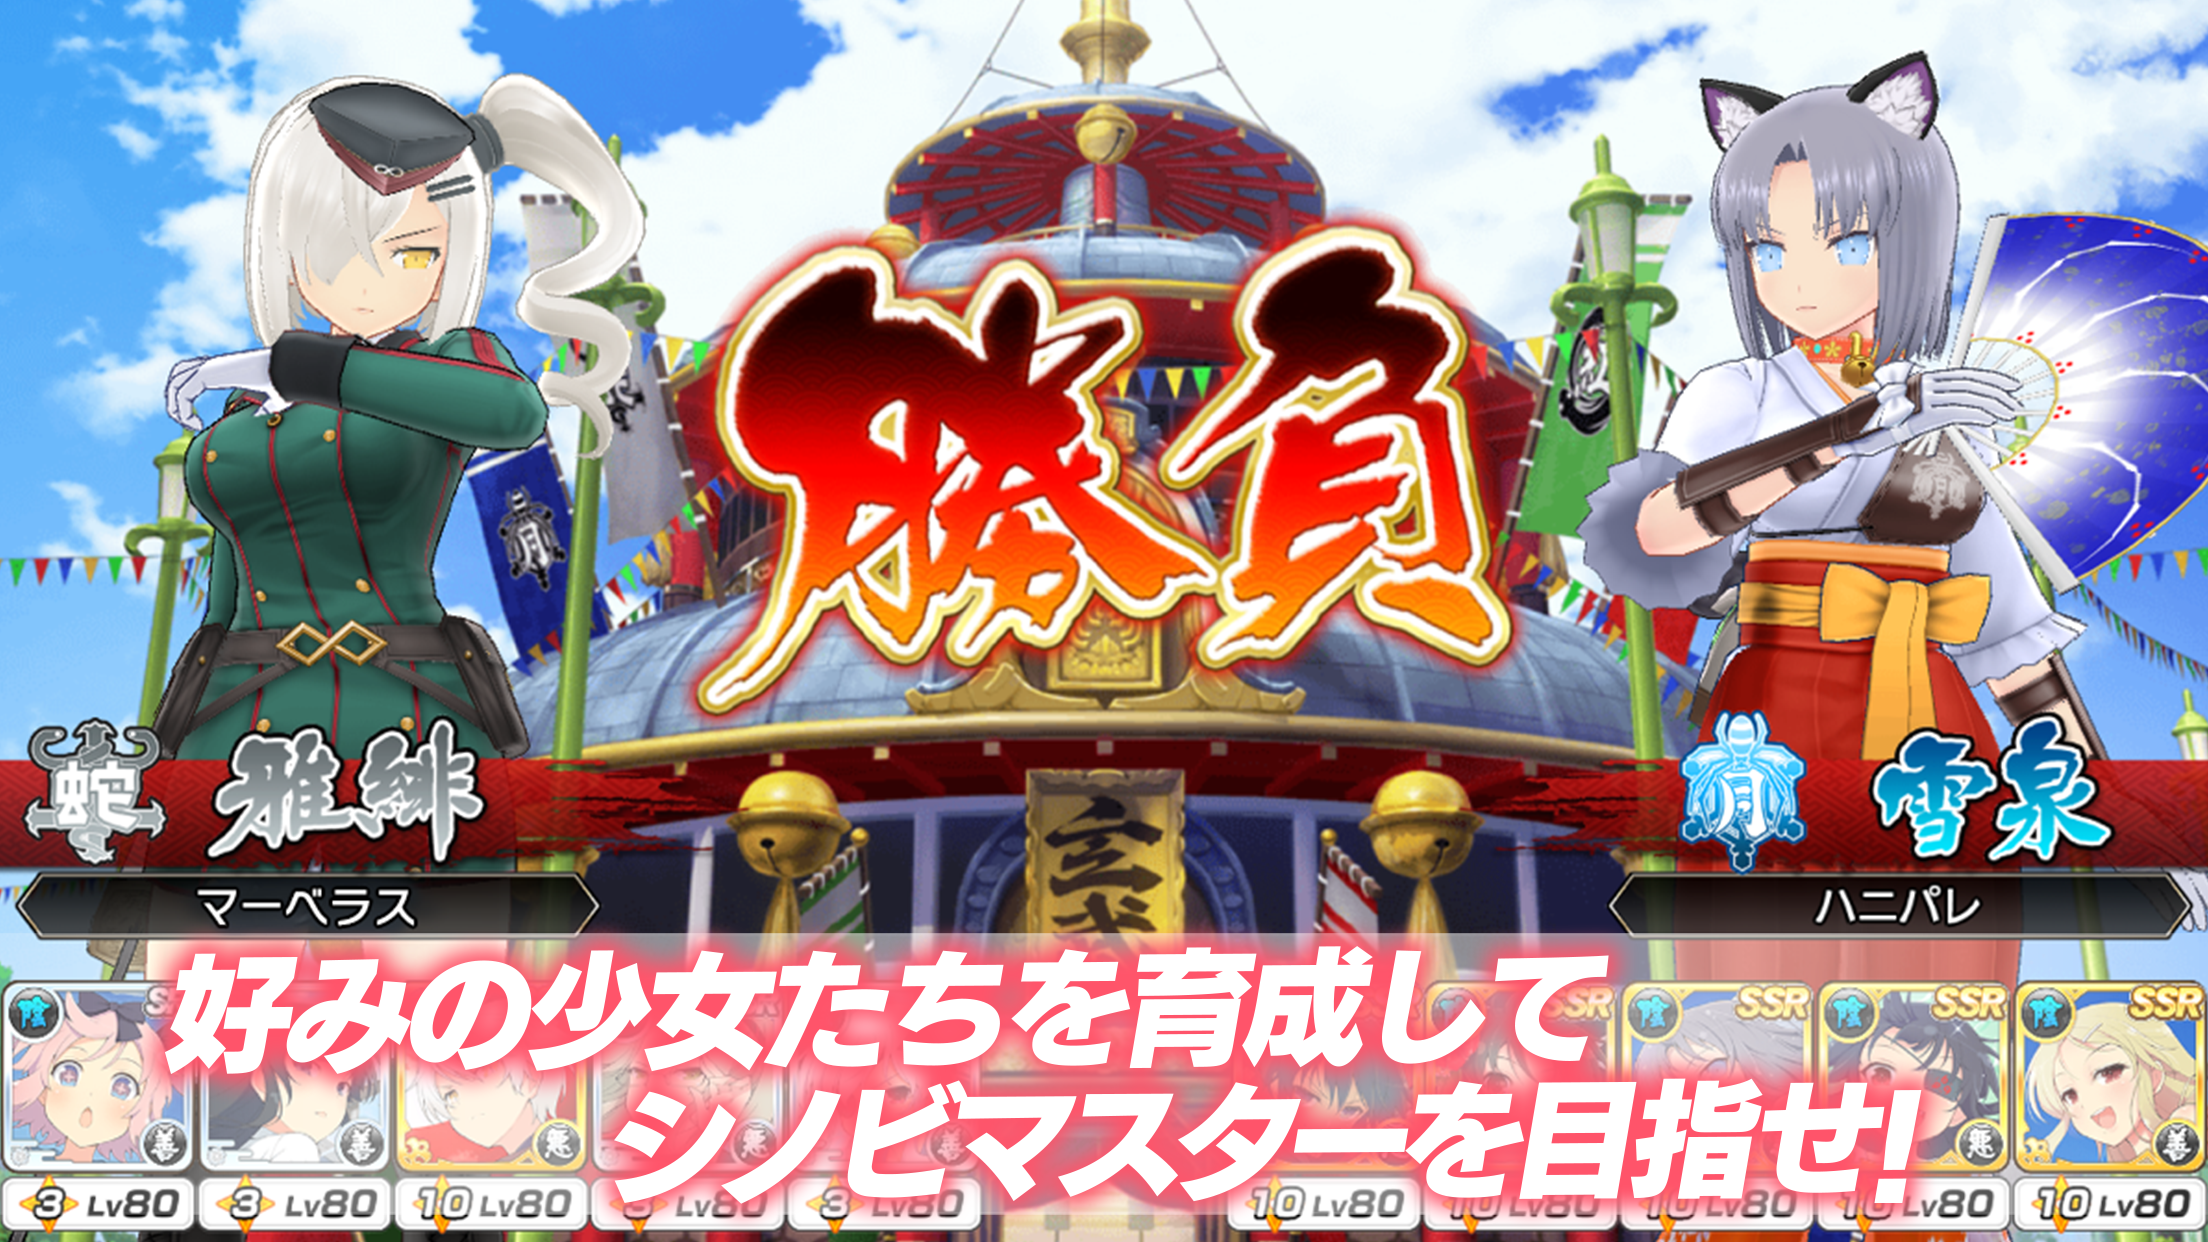 Shinobi Master Senran Kagura: New Link (2017 Video Game) - Behind